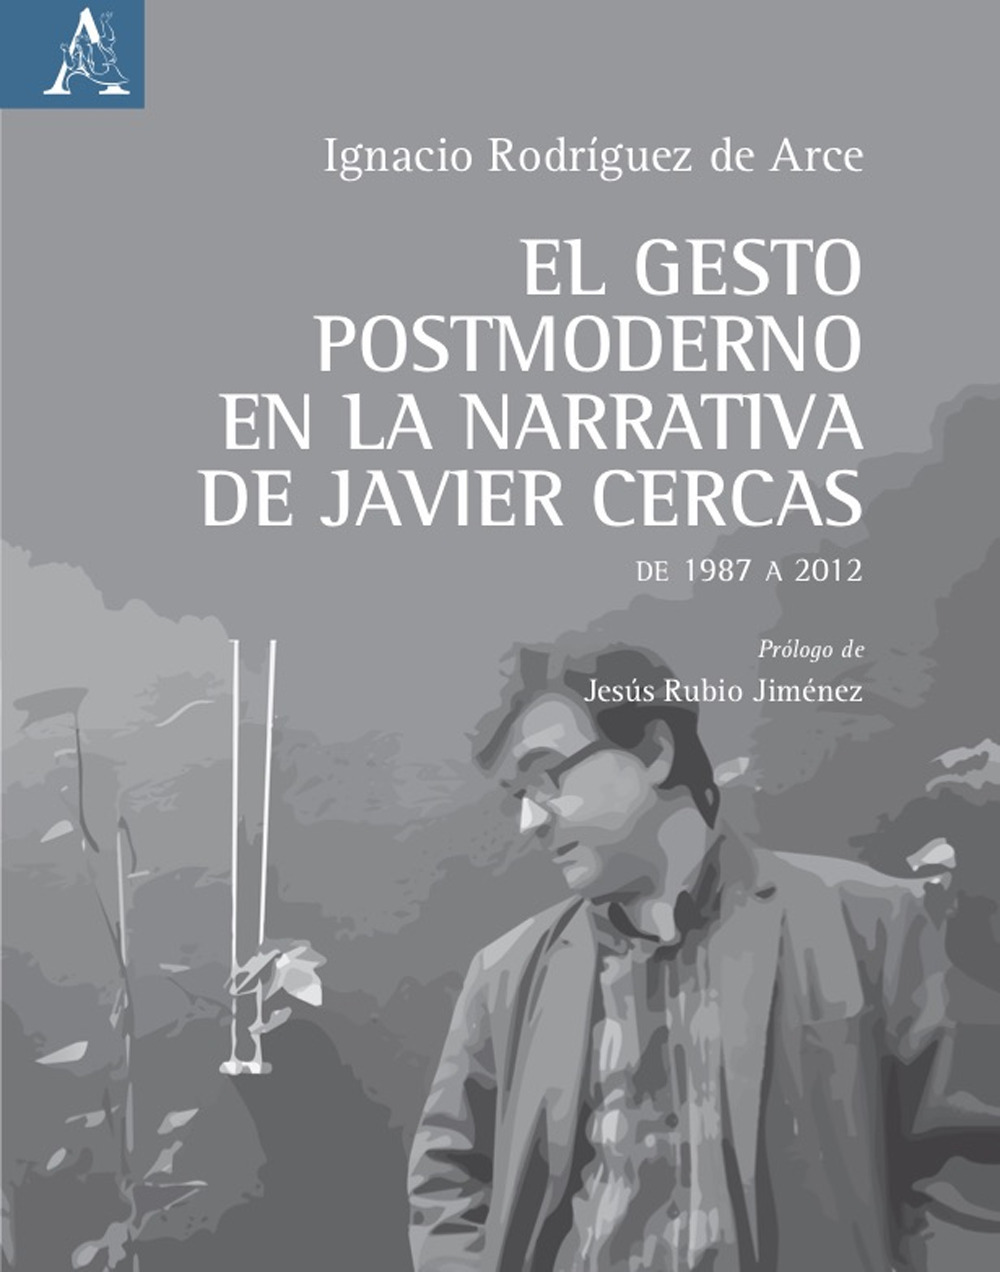 El gesto postmoderno en la narrativa de Javier Cercas. De 1987 a 2012